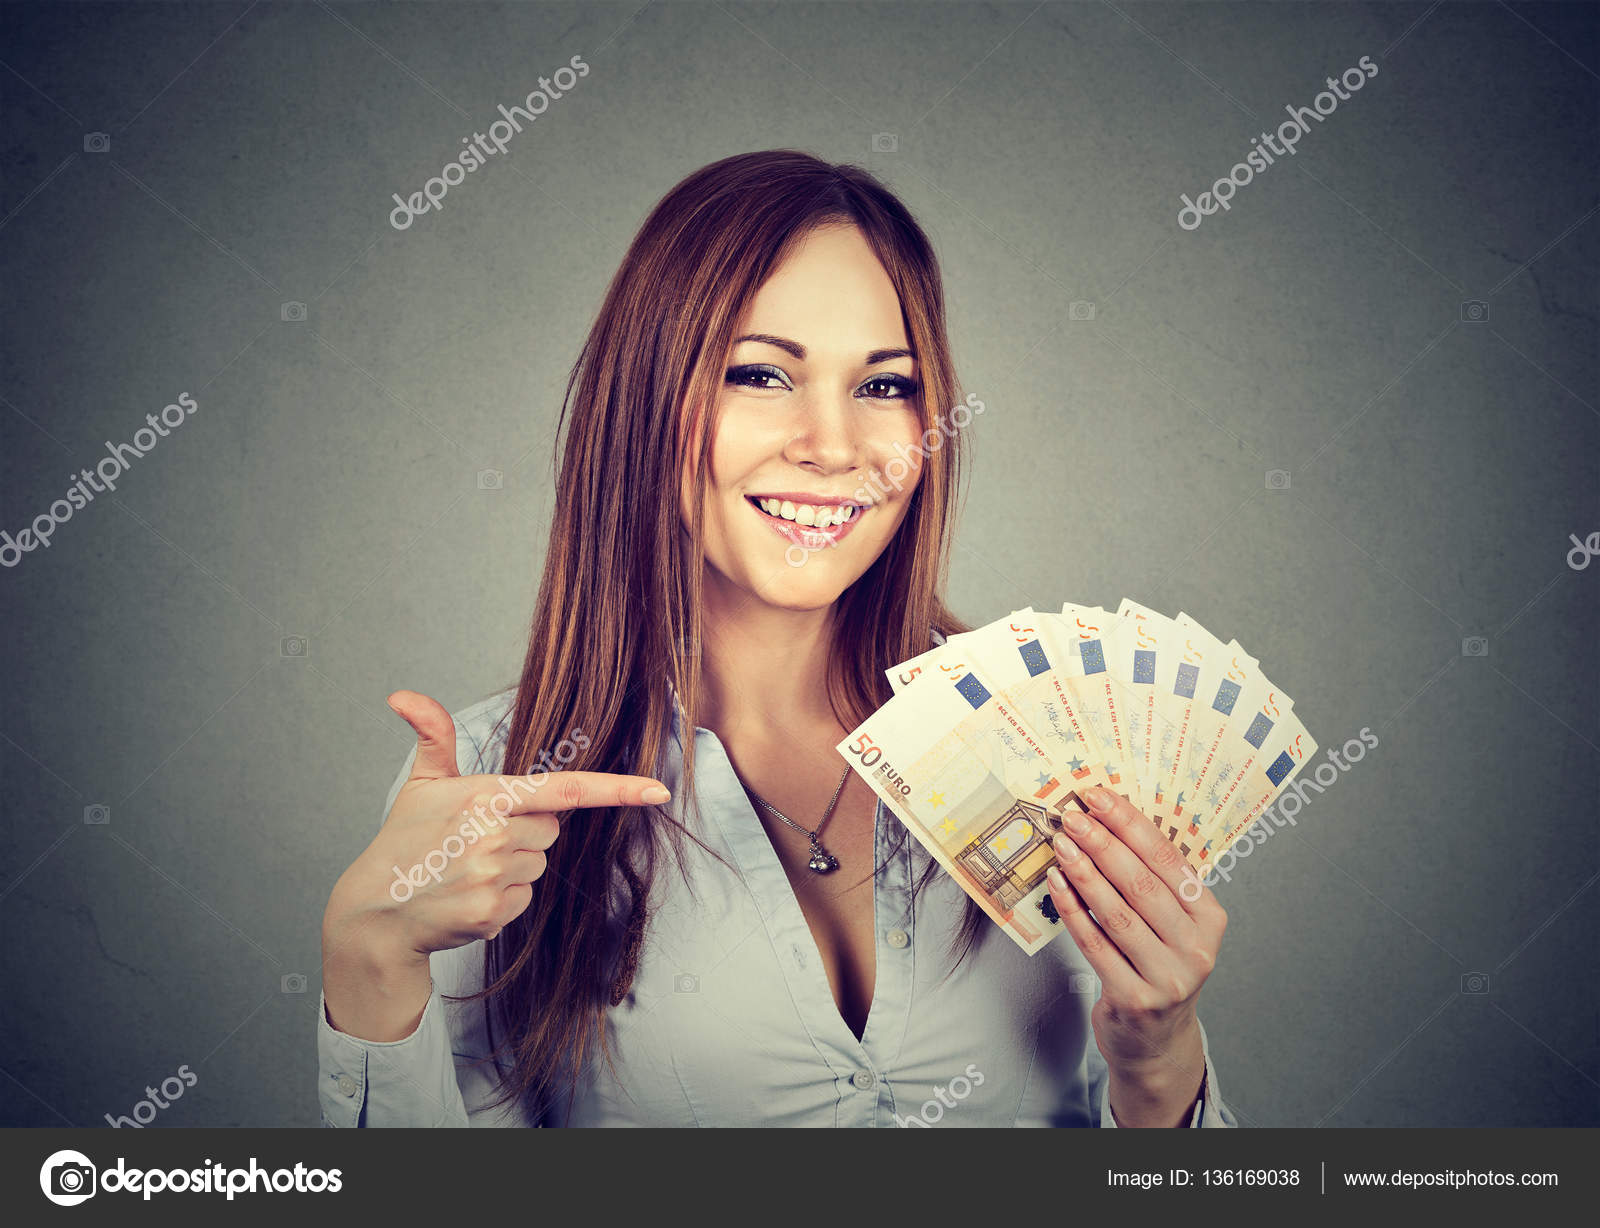 Красивую русскую за деньги. Деньги в руках девушки. Девушка с деньгами. Девушка с рублями в руках. Красивая девушка с деньгами.